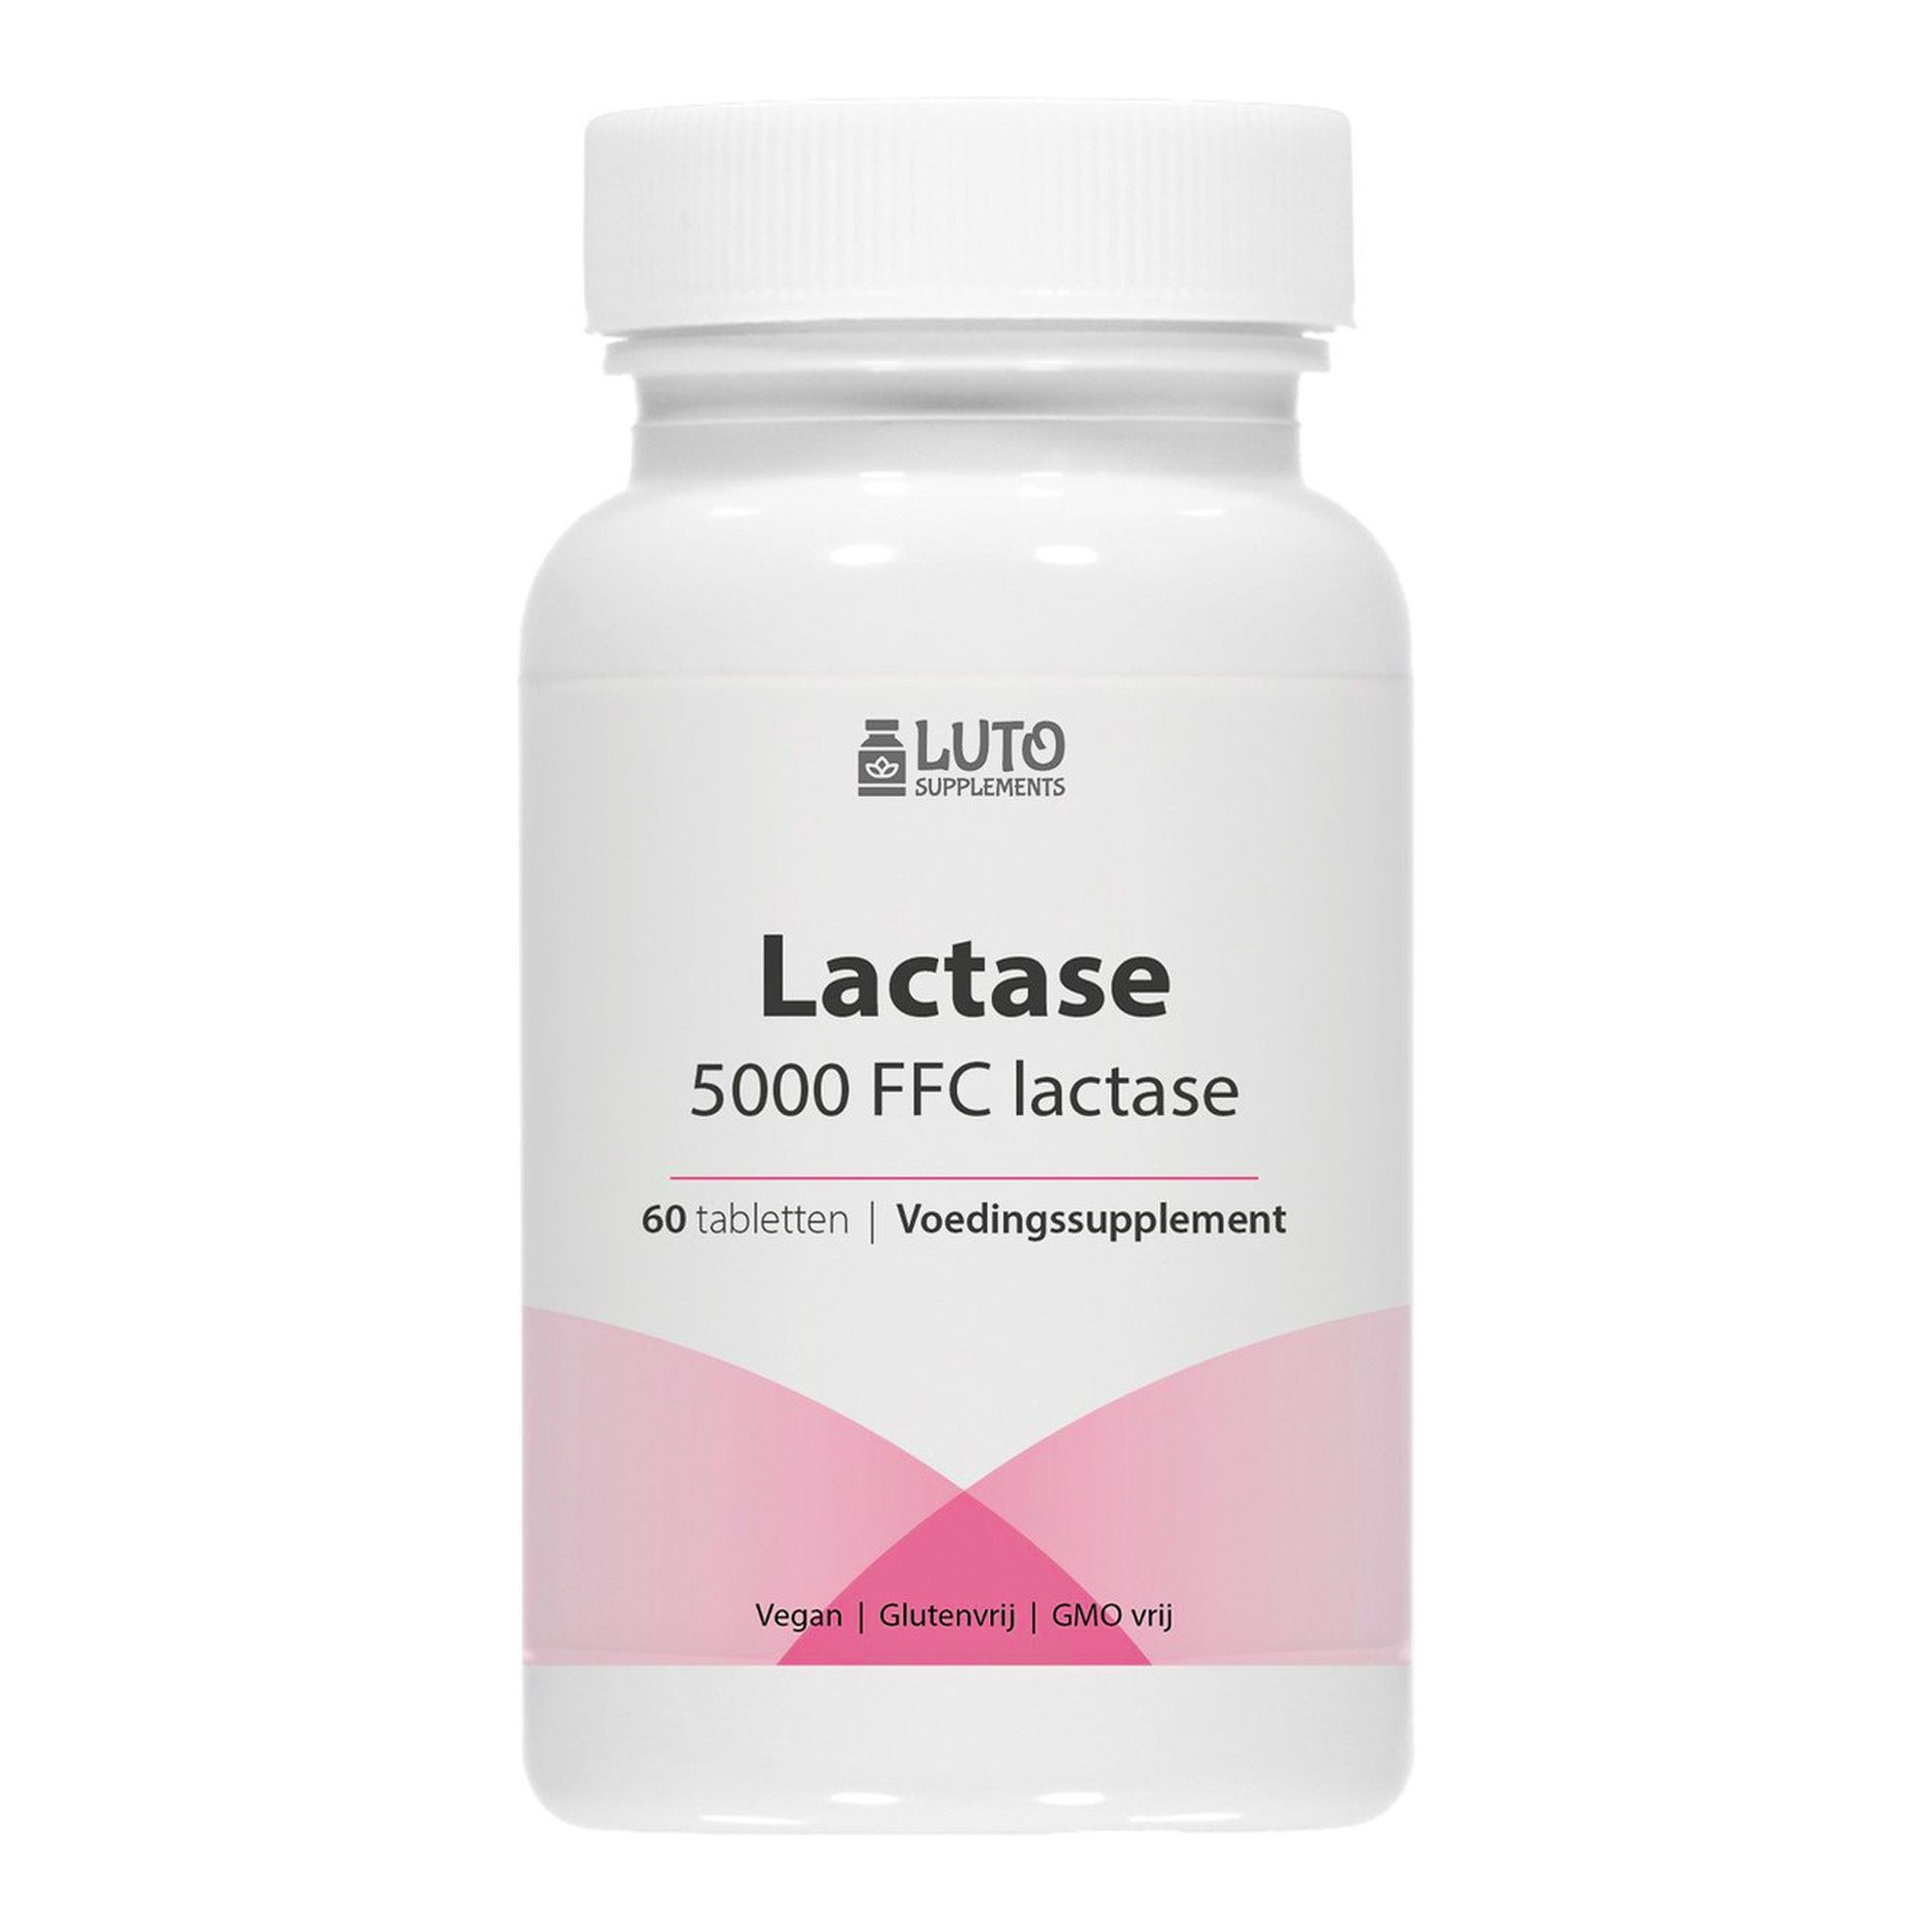 Lactase 5.000 | 90 tabletten | Hoog gedoseerd met 5.000 FCC-eenheden | Voor lactose-intolerantie + melk-intolerantie | Zonder ongewenste toevoegingen | Veganistisch | Luto Supplements